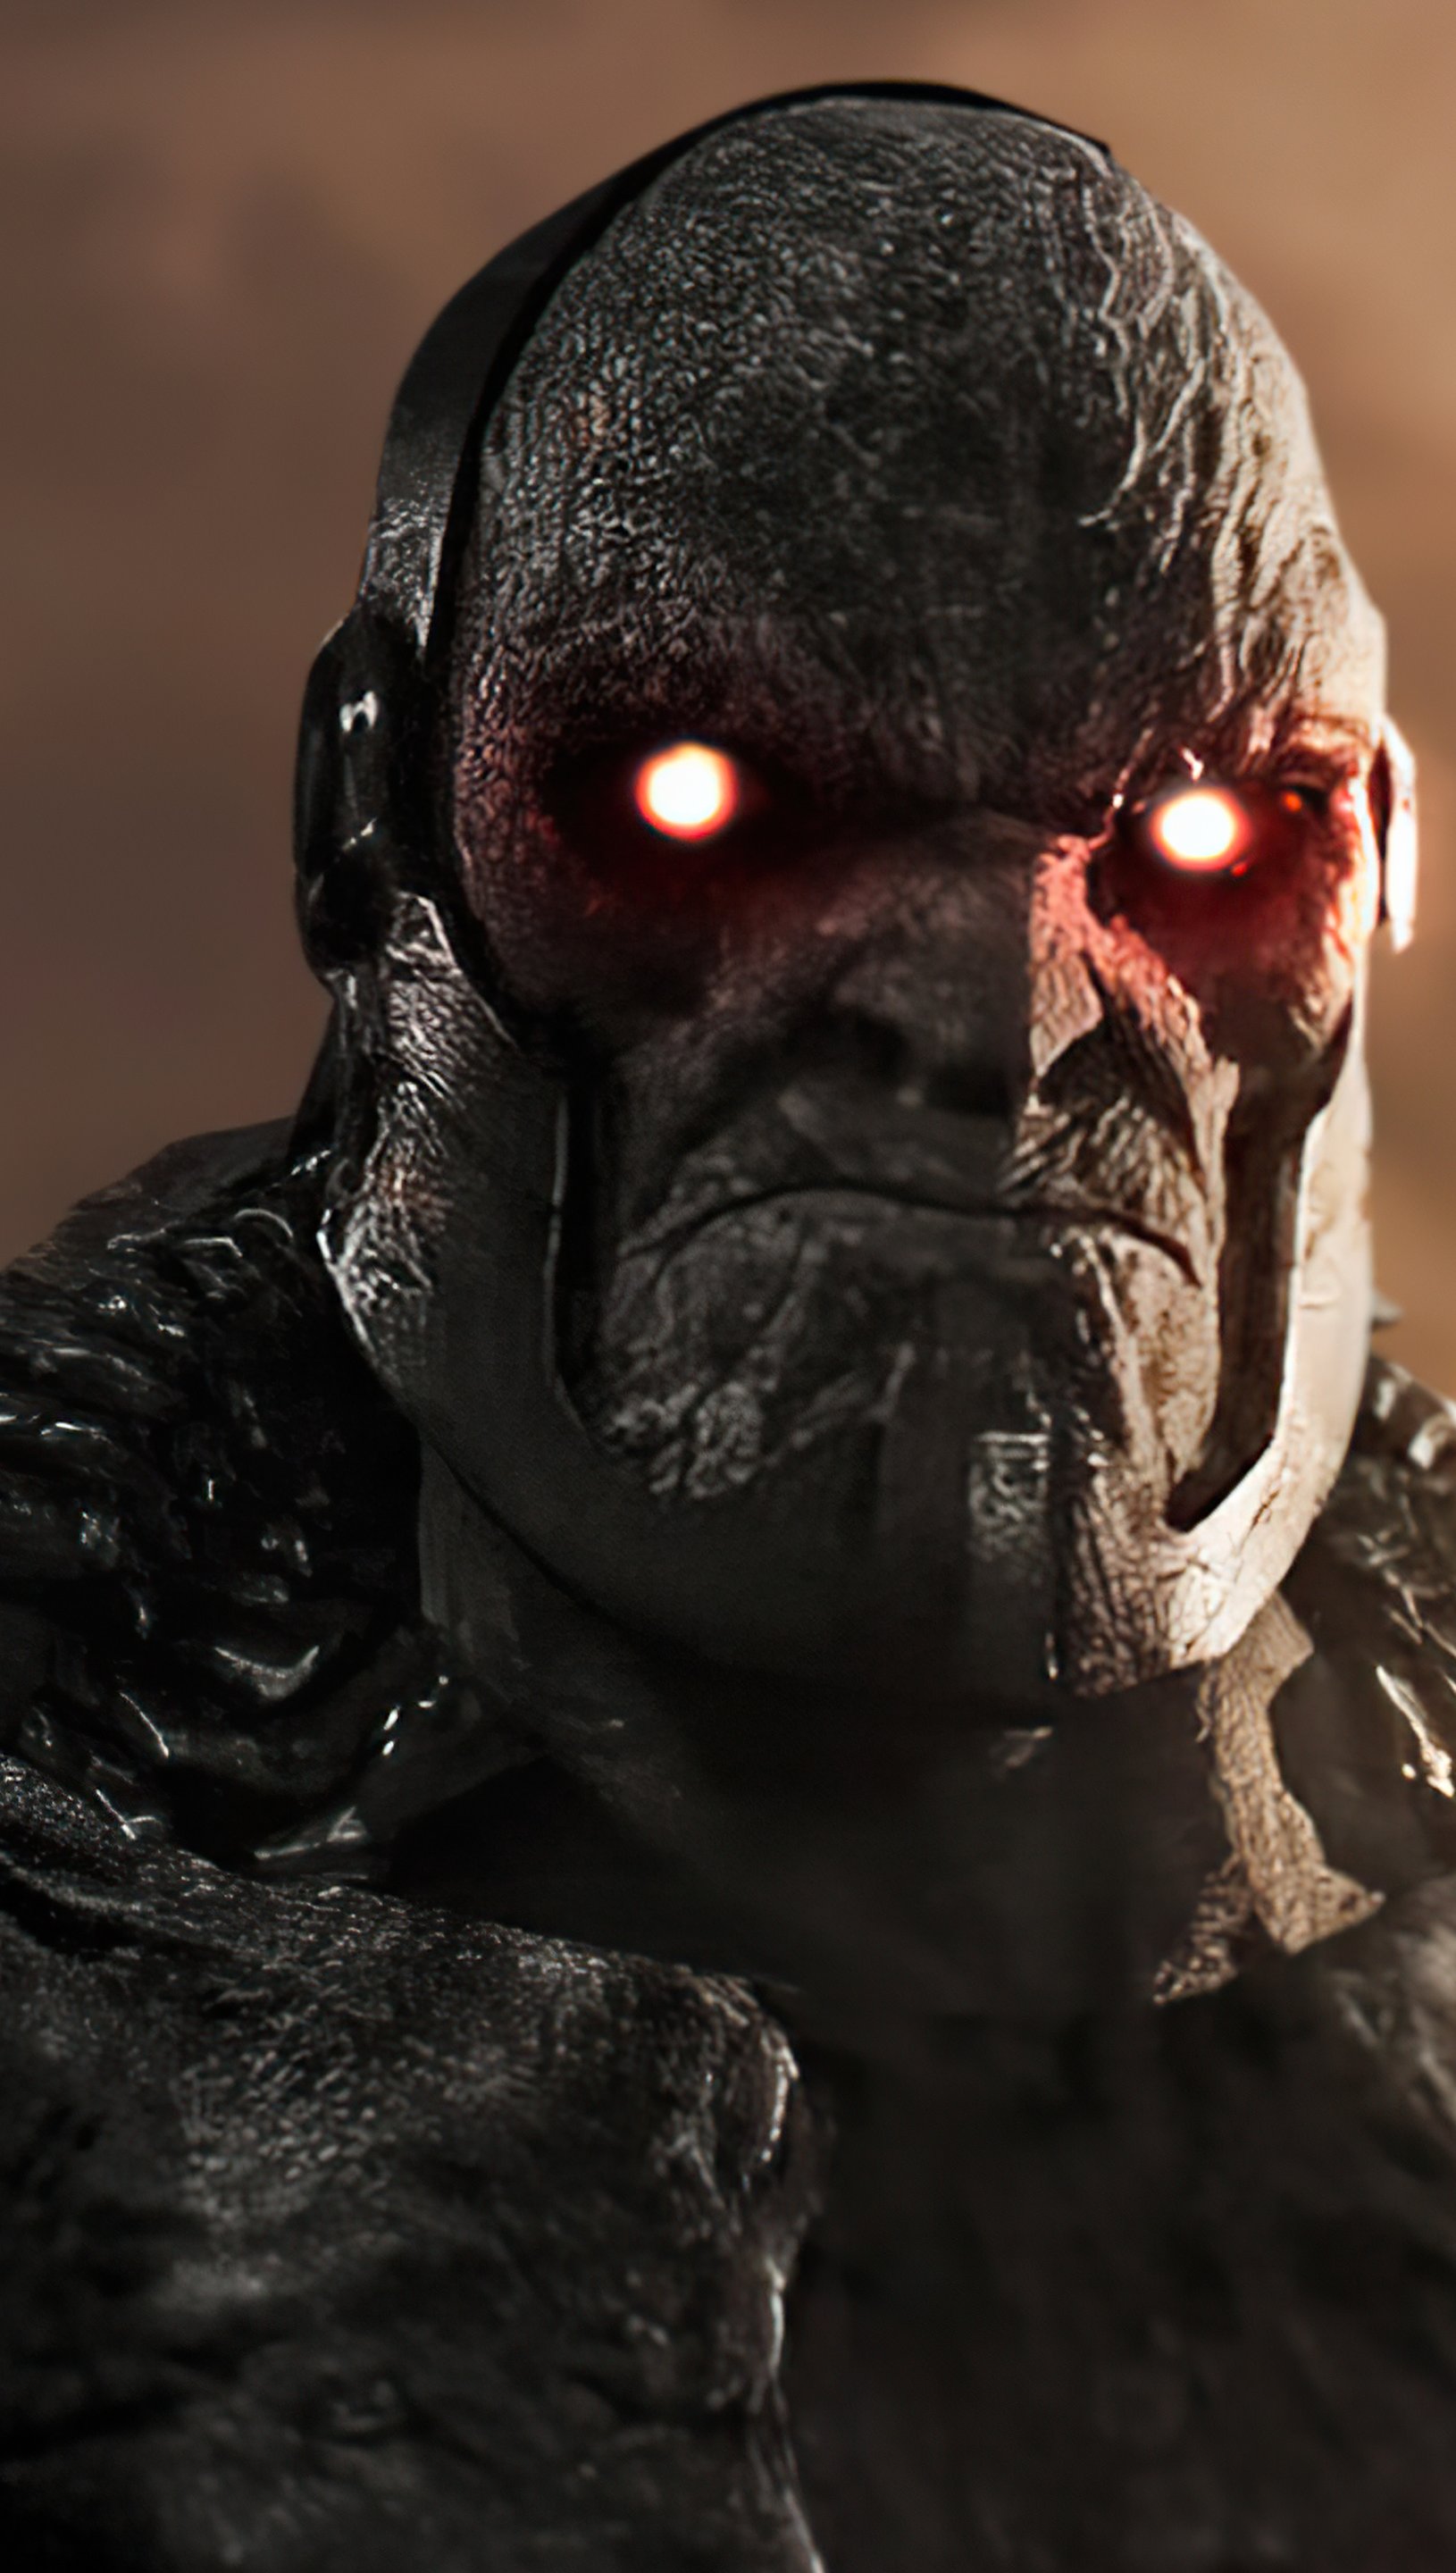 Fondos de pantalla Darkseid Liga de la justicia 2021 Vertical